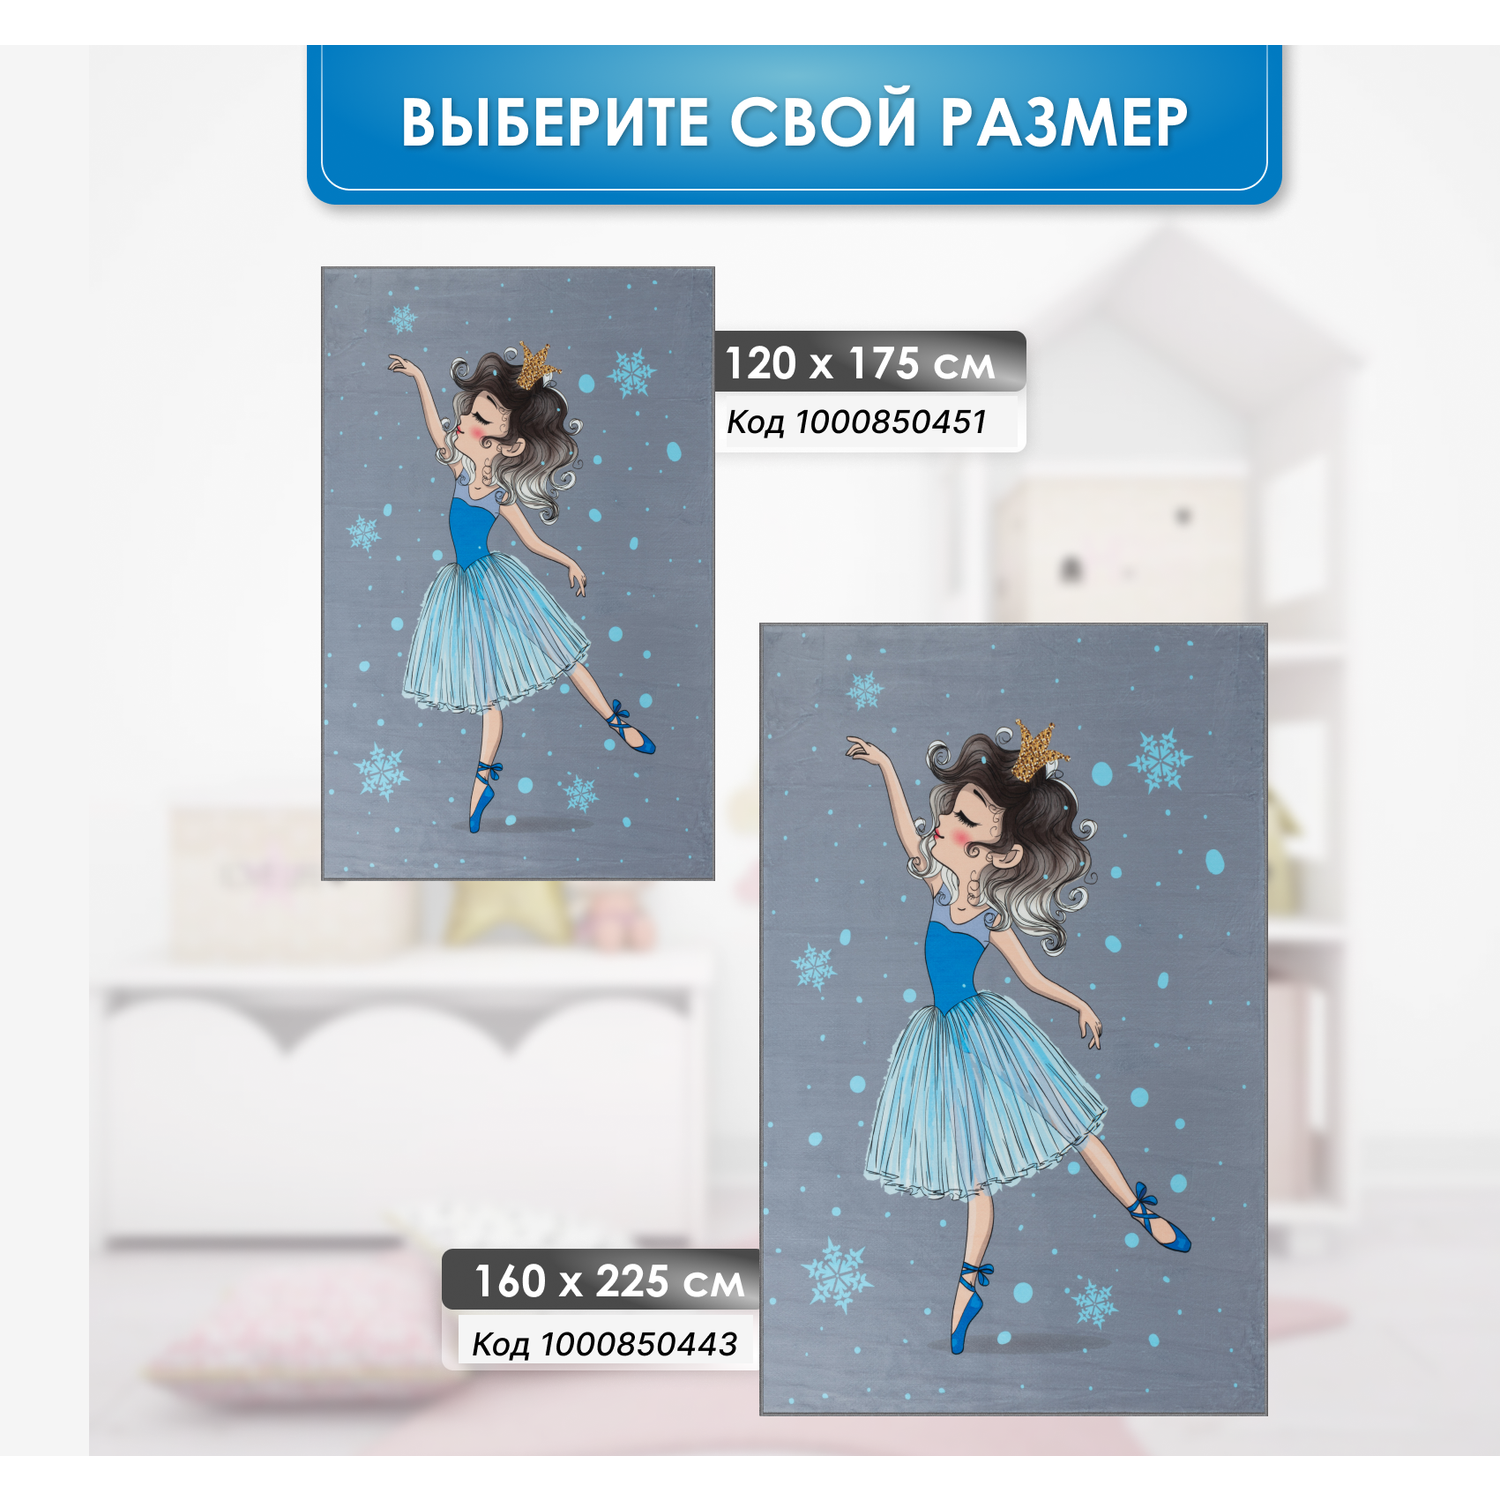 Ковер комнатный детский KOVRIKANA балерина снежинка 160см на 225см - фото 7